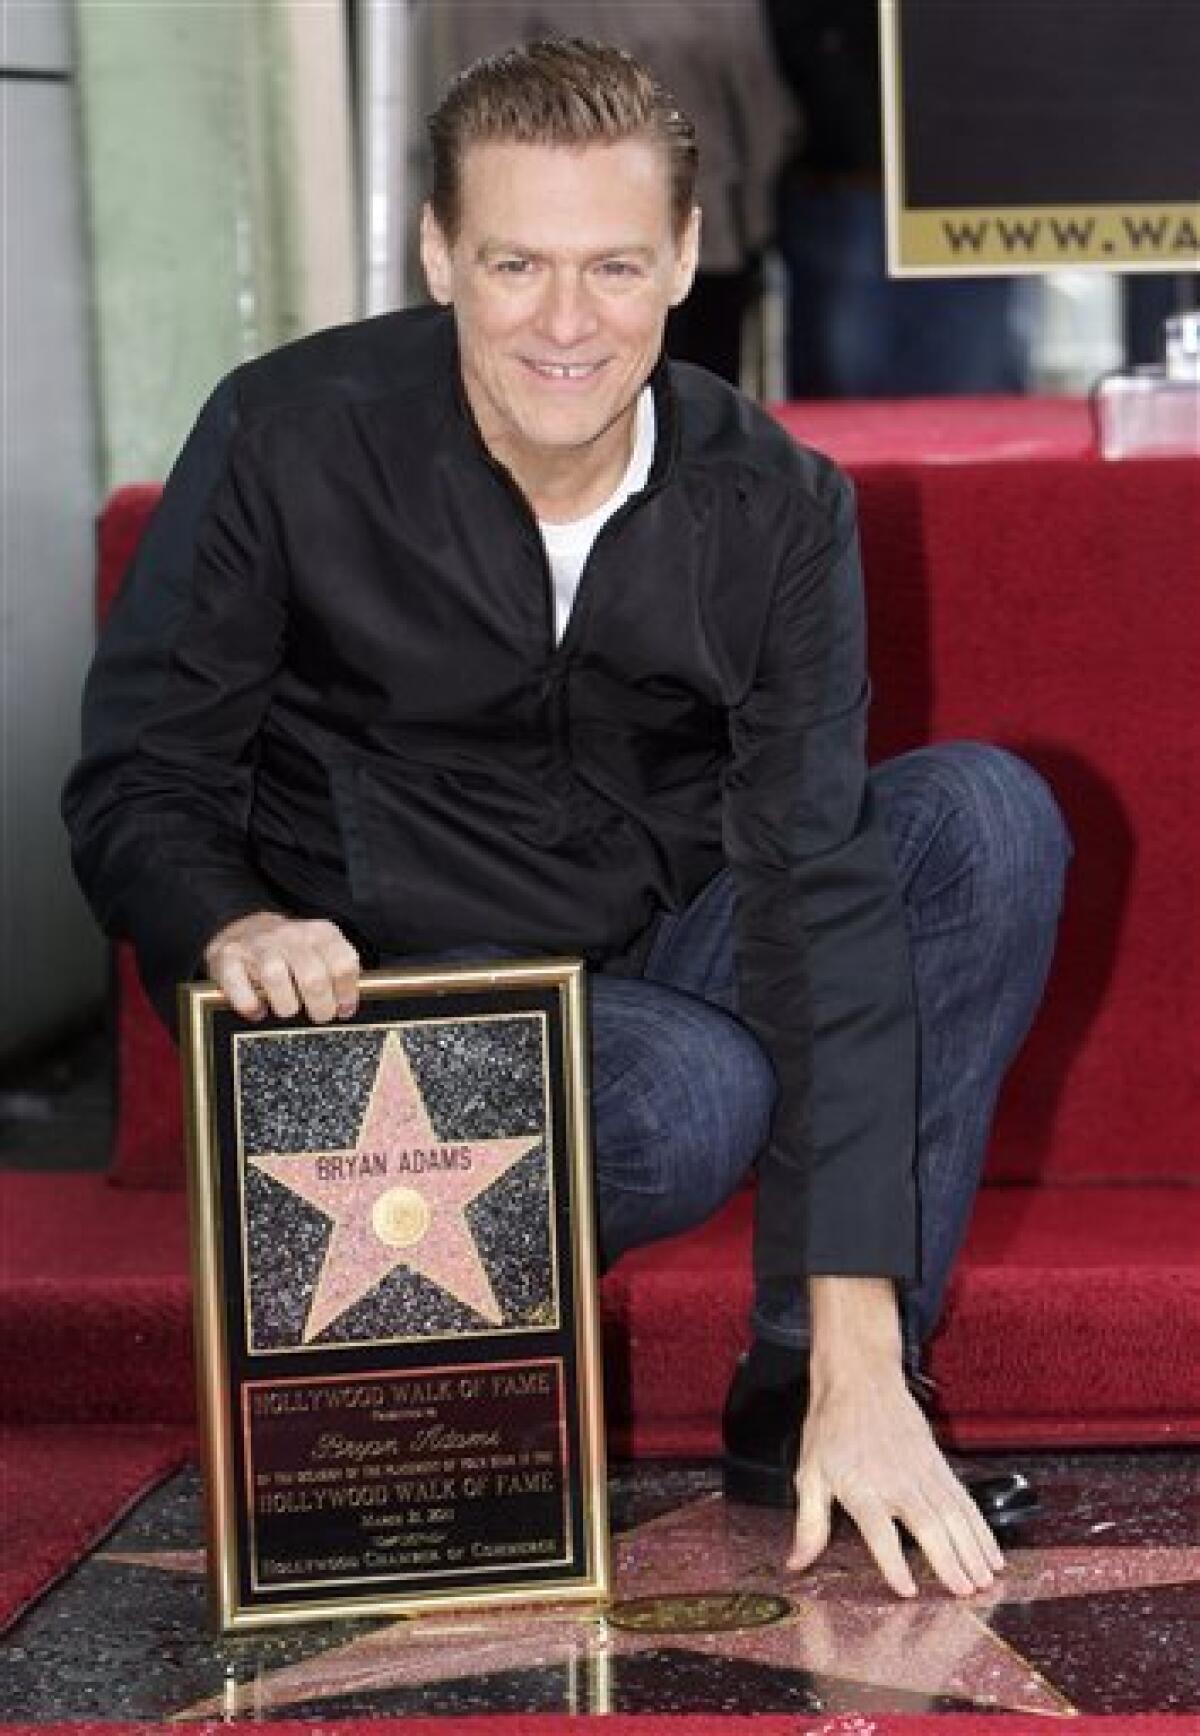 Canadian singer Bryan Adams gets Hollywood star - The San Diego